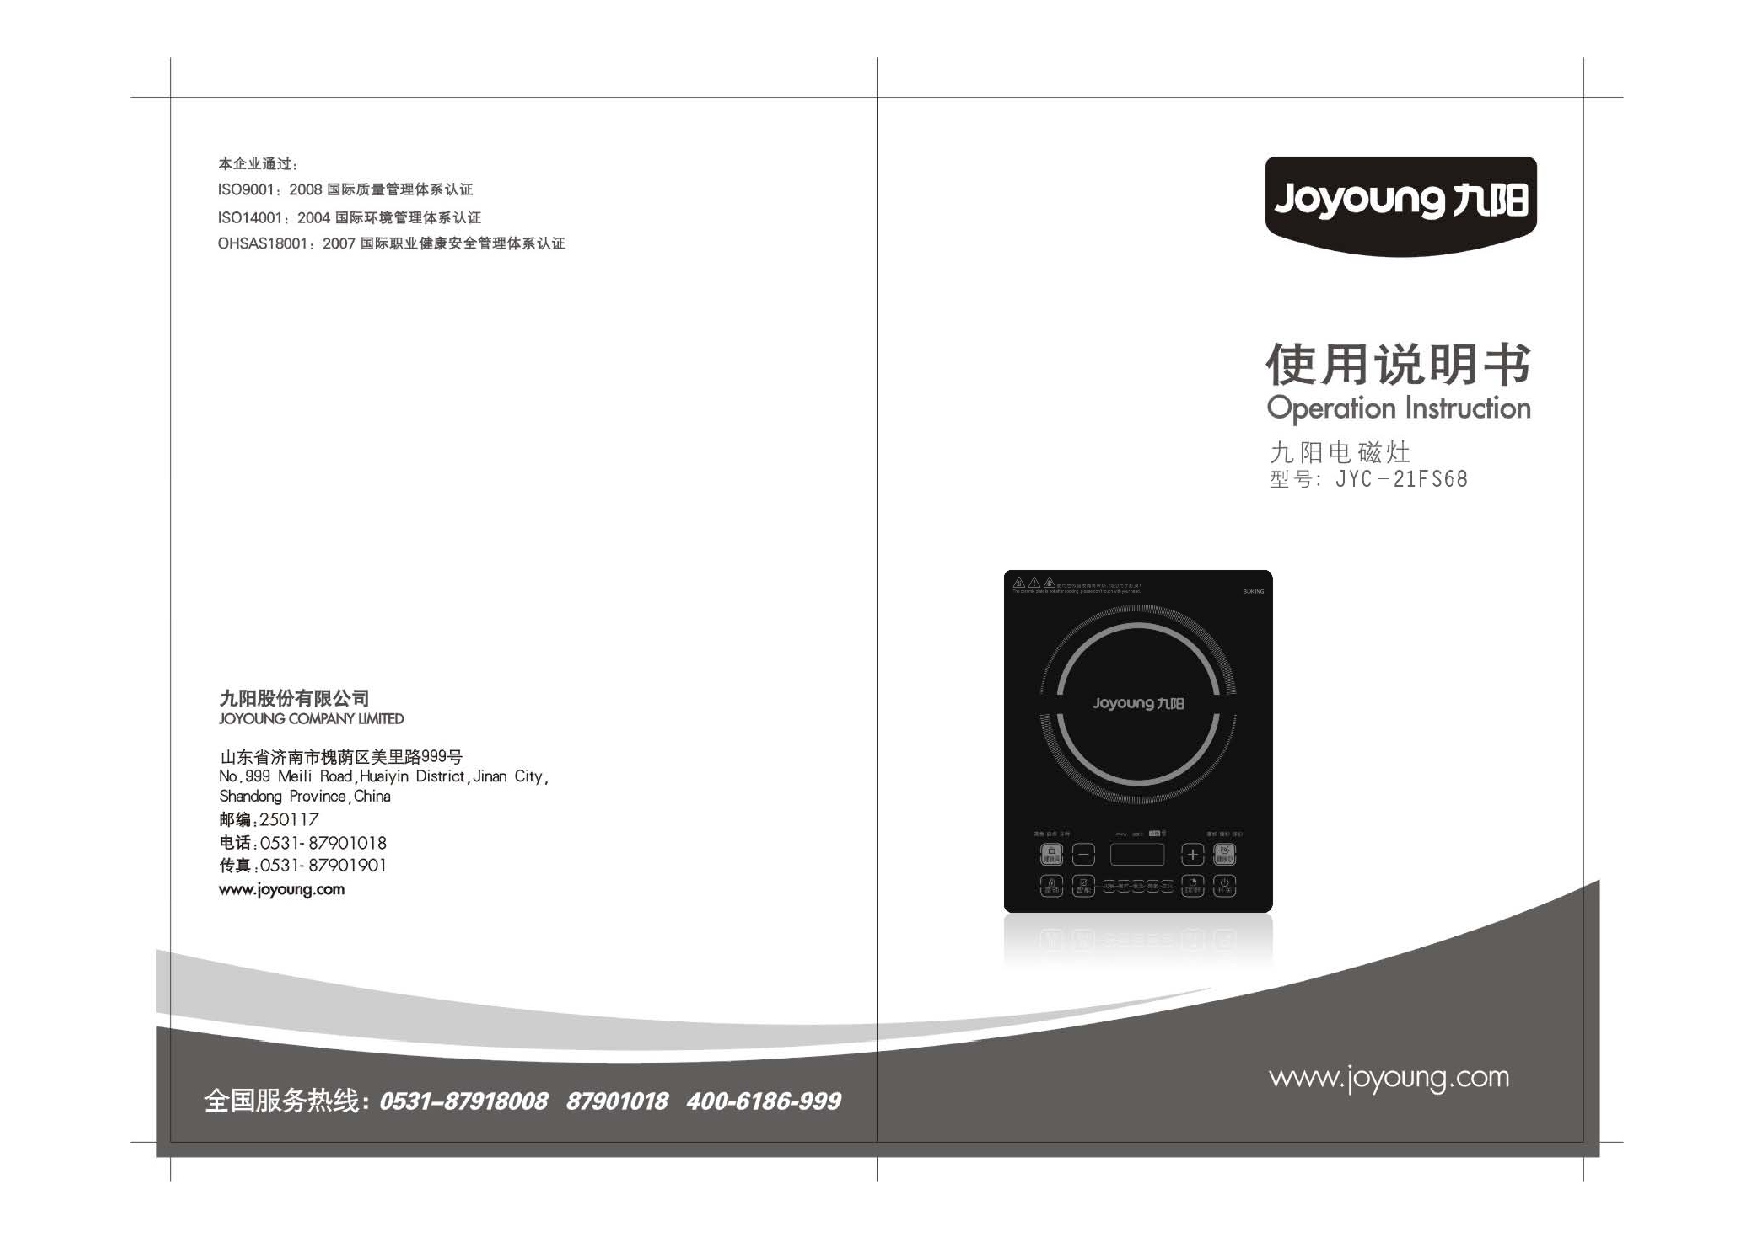 九阳 Joyyoung JYC-21FS68 使用说明书 封面